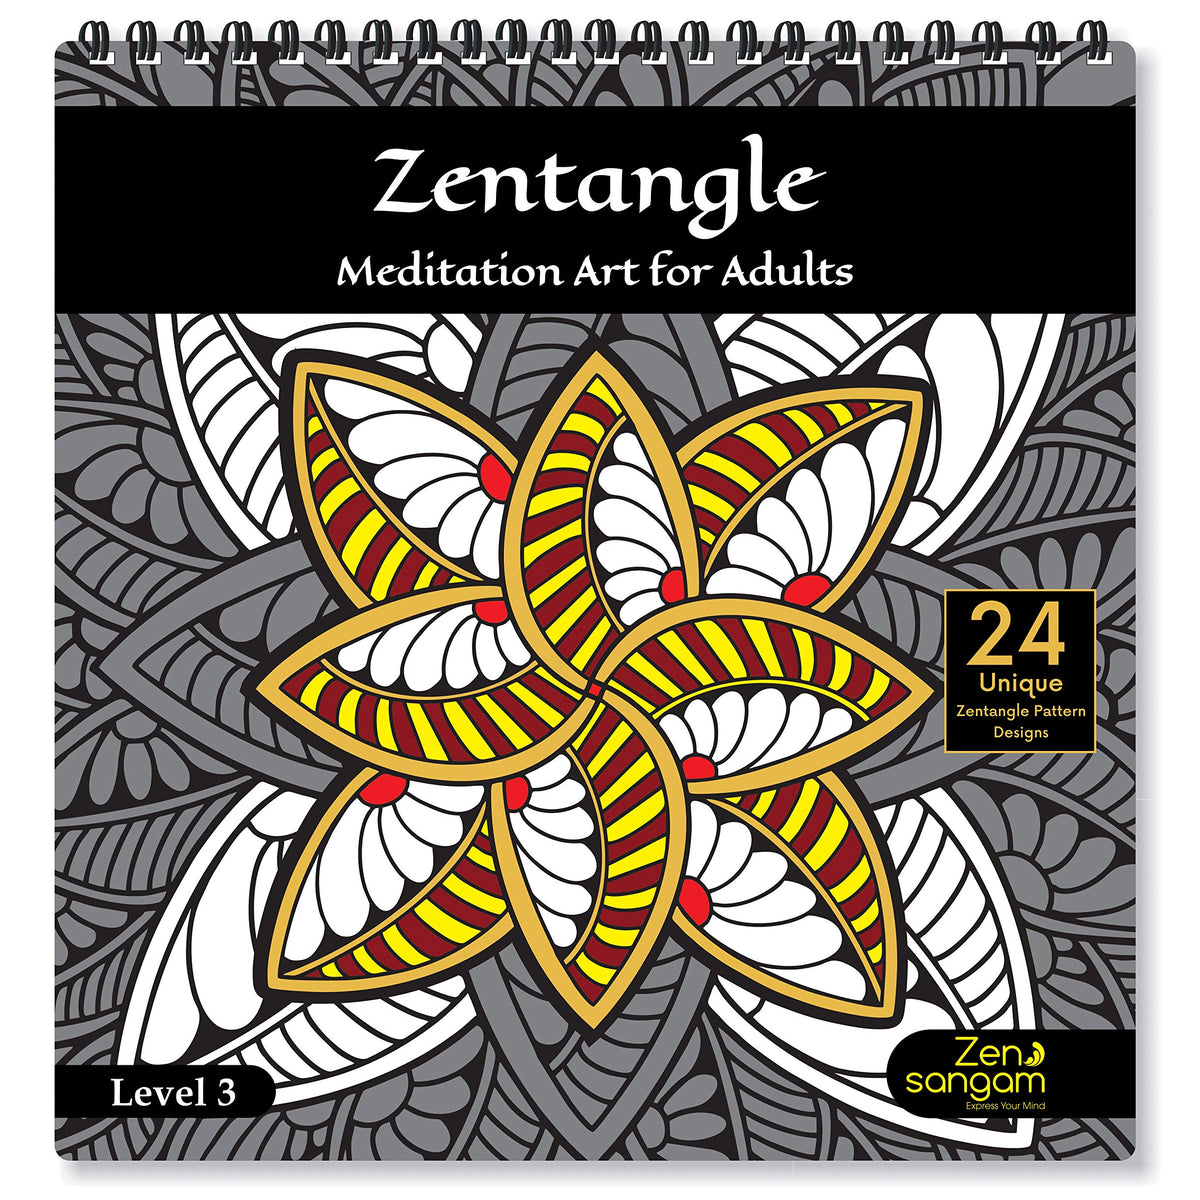 Zentangle Art Supplies South Africa, Buy Zentangle Art Supplies Online